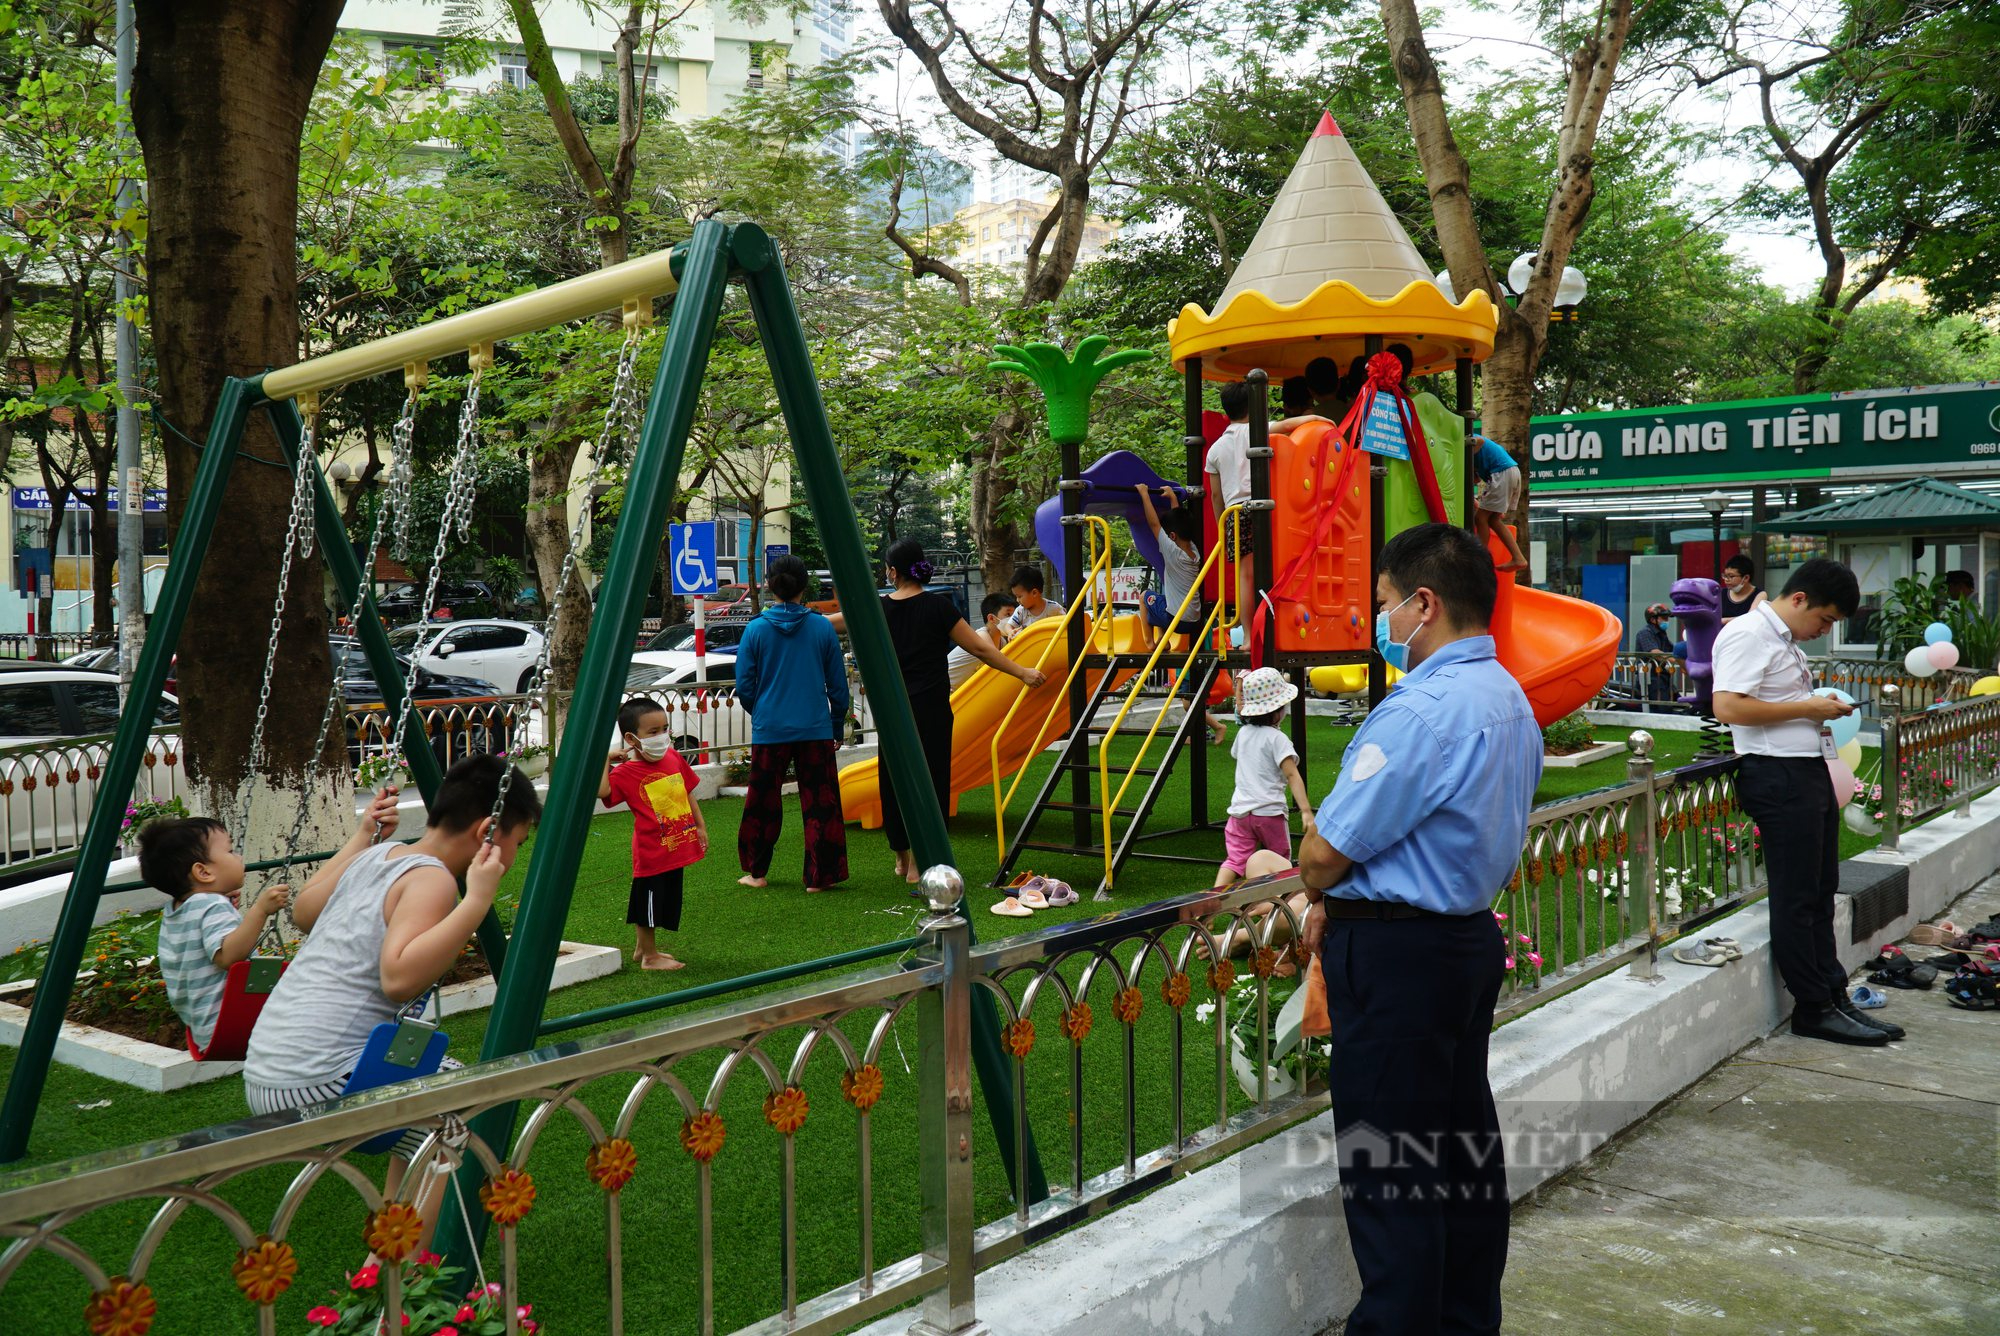 Cầu Giấy: Thêm khu vui chơi và thể dục thể thao cho trẻ em vào dịp nghỉ hè - Ảnh 3.